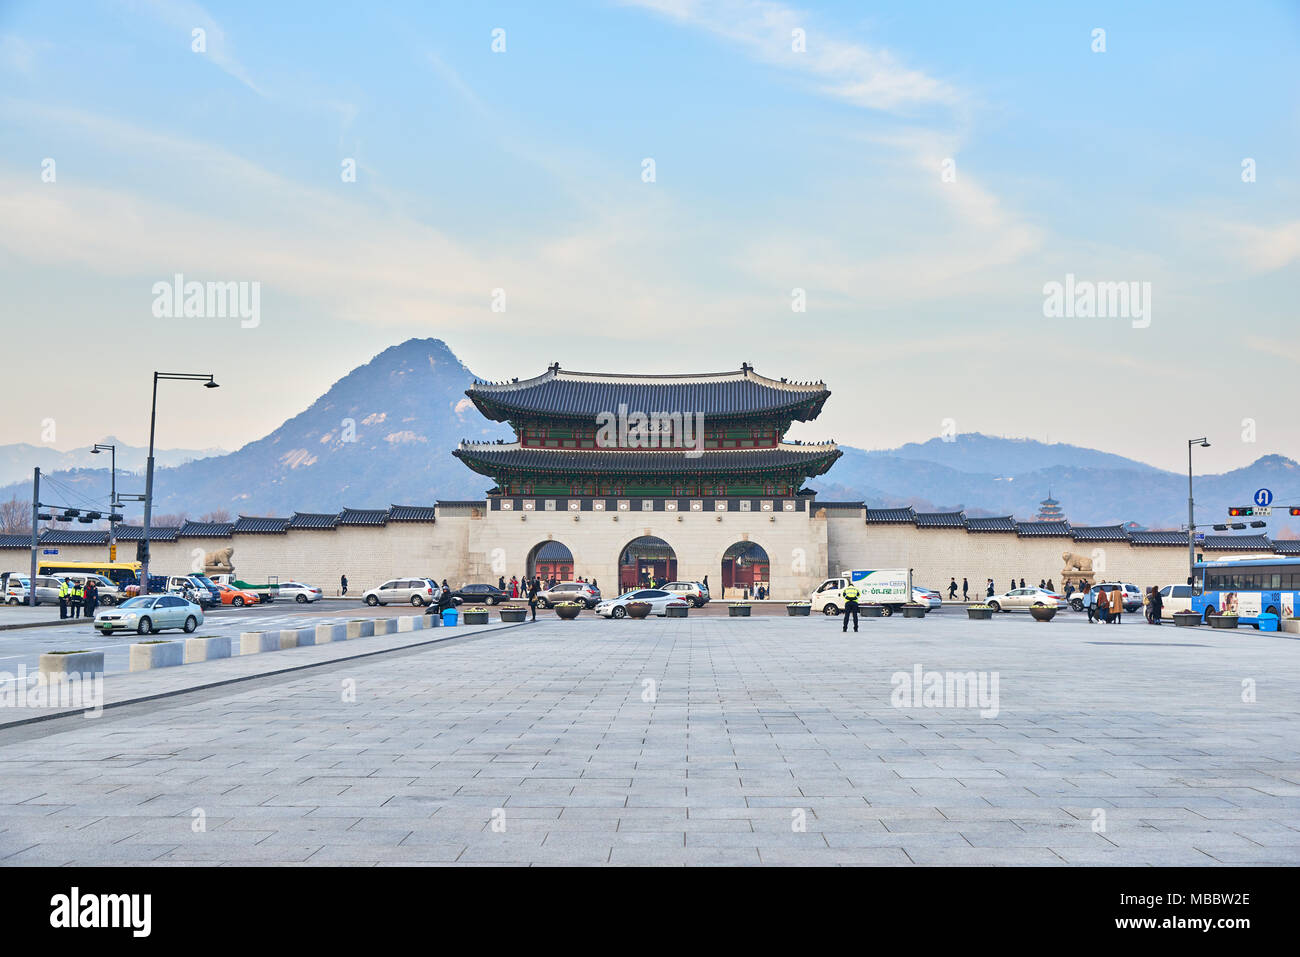 Seoul, Corea del Sud - 9 Dicembre 2015: Gwanghwamun Gate. È il cancello principale del palazzo Gyeongbokgung. è anche un punto di riferimento e simbolo di Seoul di lungo histo Foto Stock